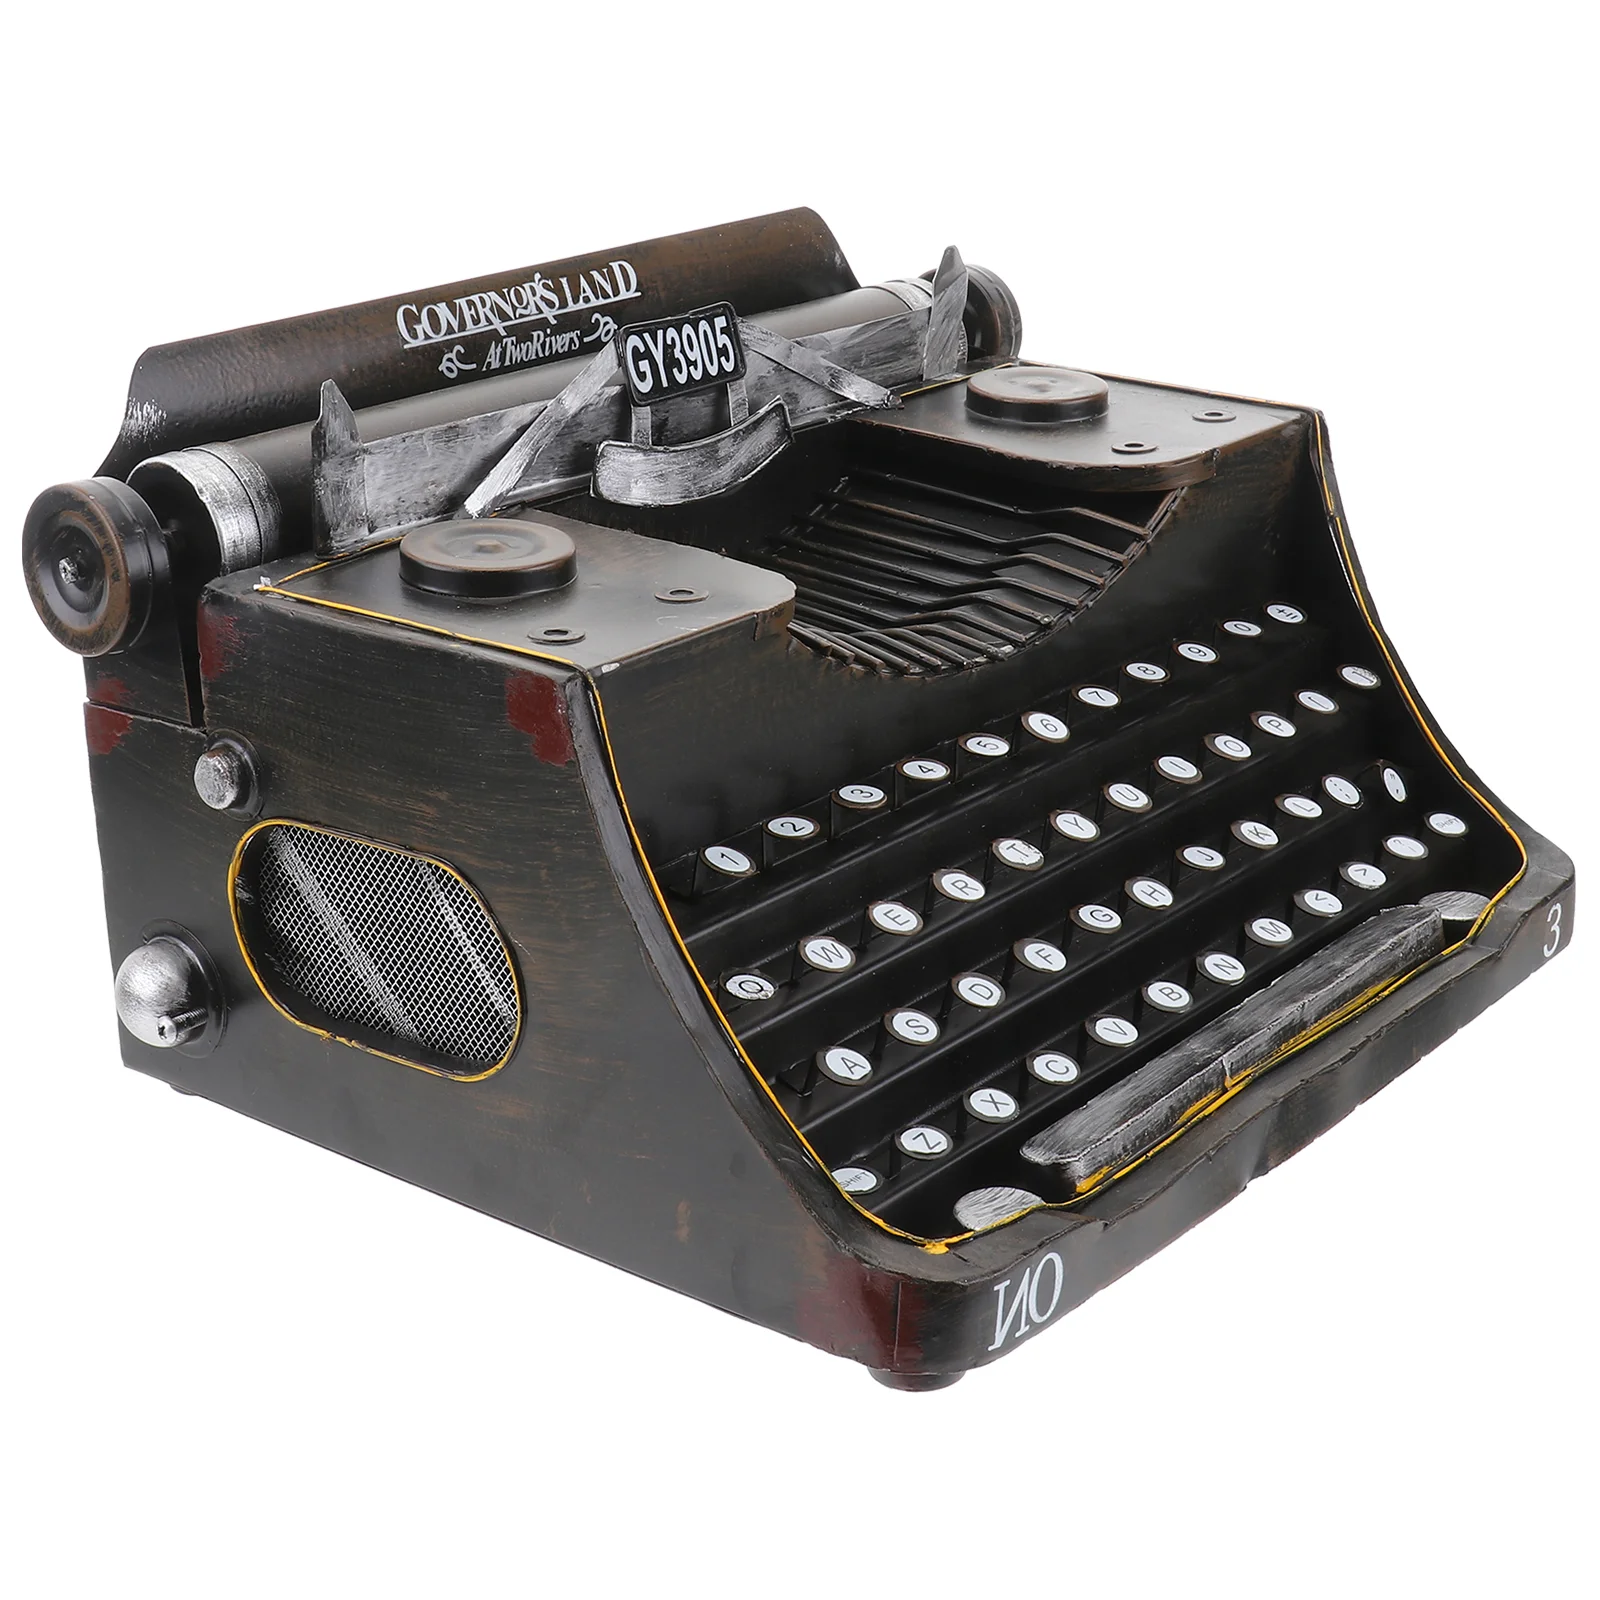 

Vintage Typewriter Model Typewriter Typewriter Manual Typewriter Photo Prop Tabletop Decoration Desktop Ornament Black